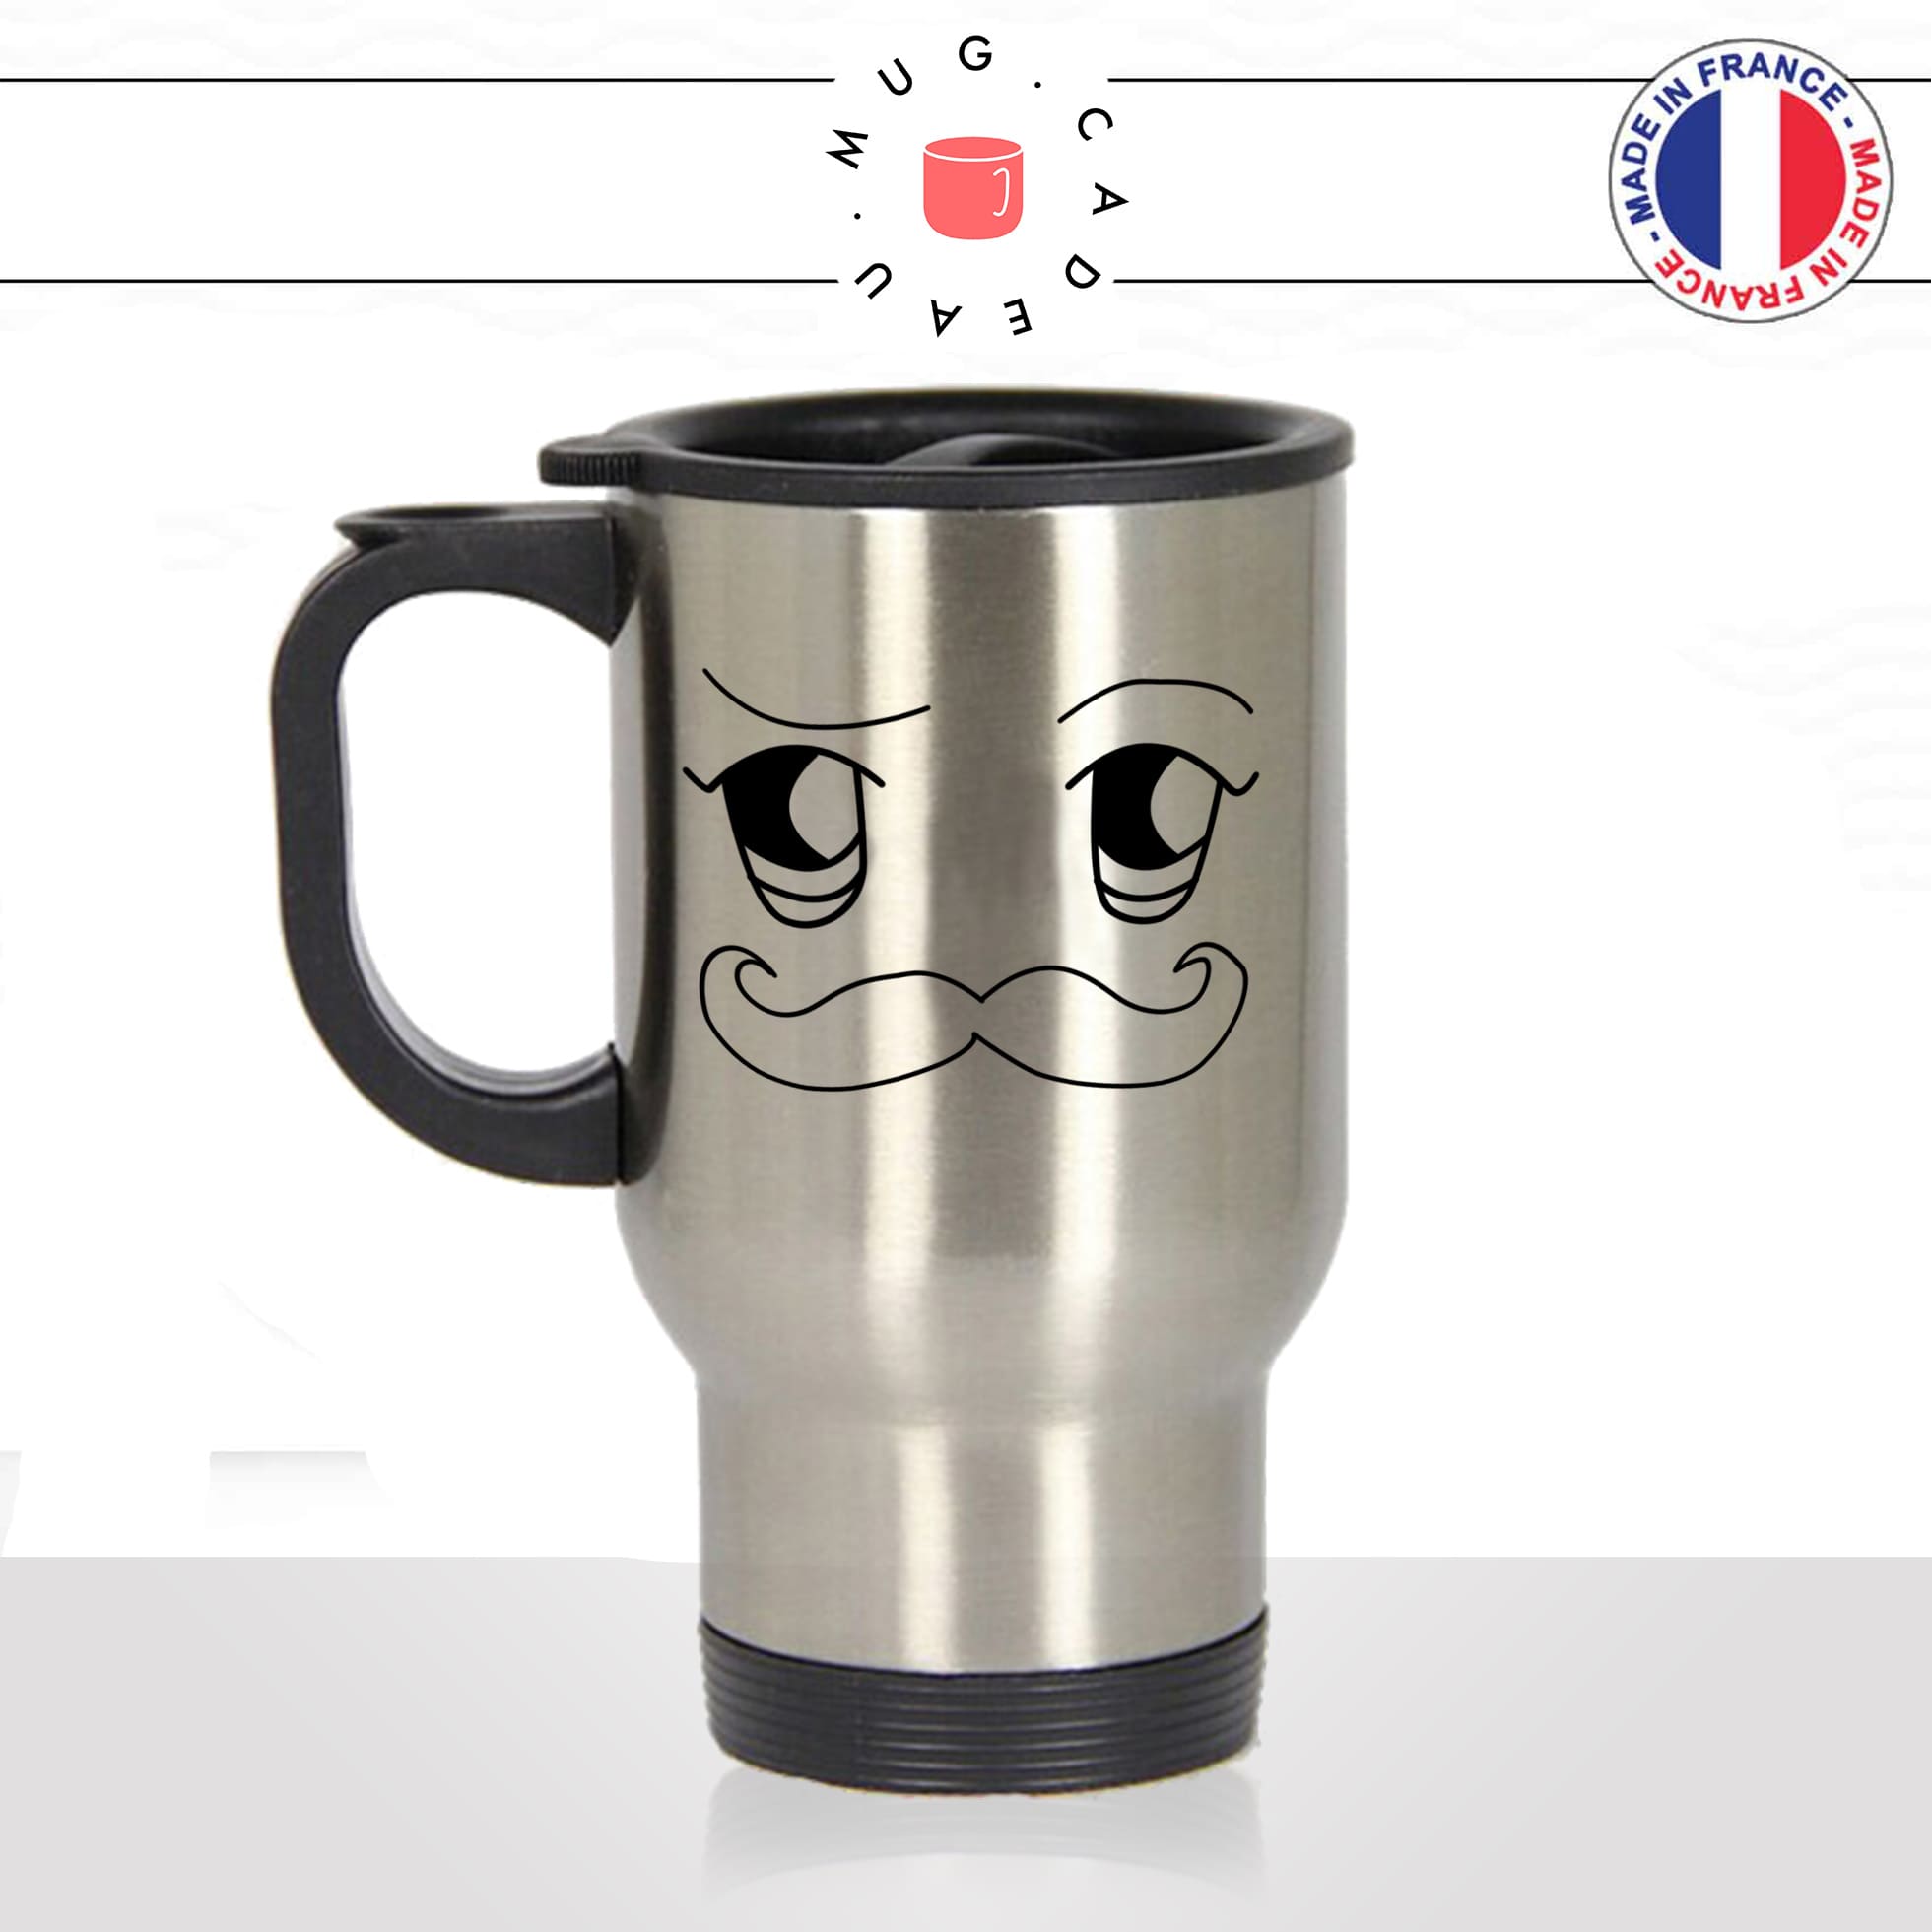 mug-tasse-de-voyage-inox-gris-visage-a-moustache-moustachu-yeux-animal-mignon-idée-cadeau-original-café-thé-boisson-chaude